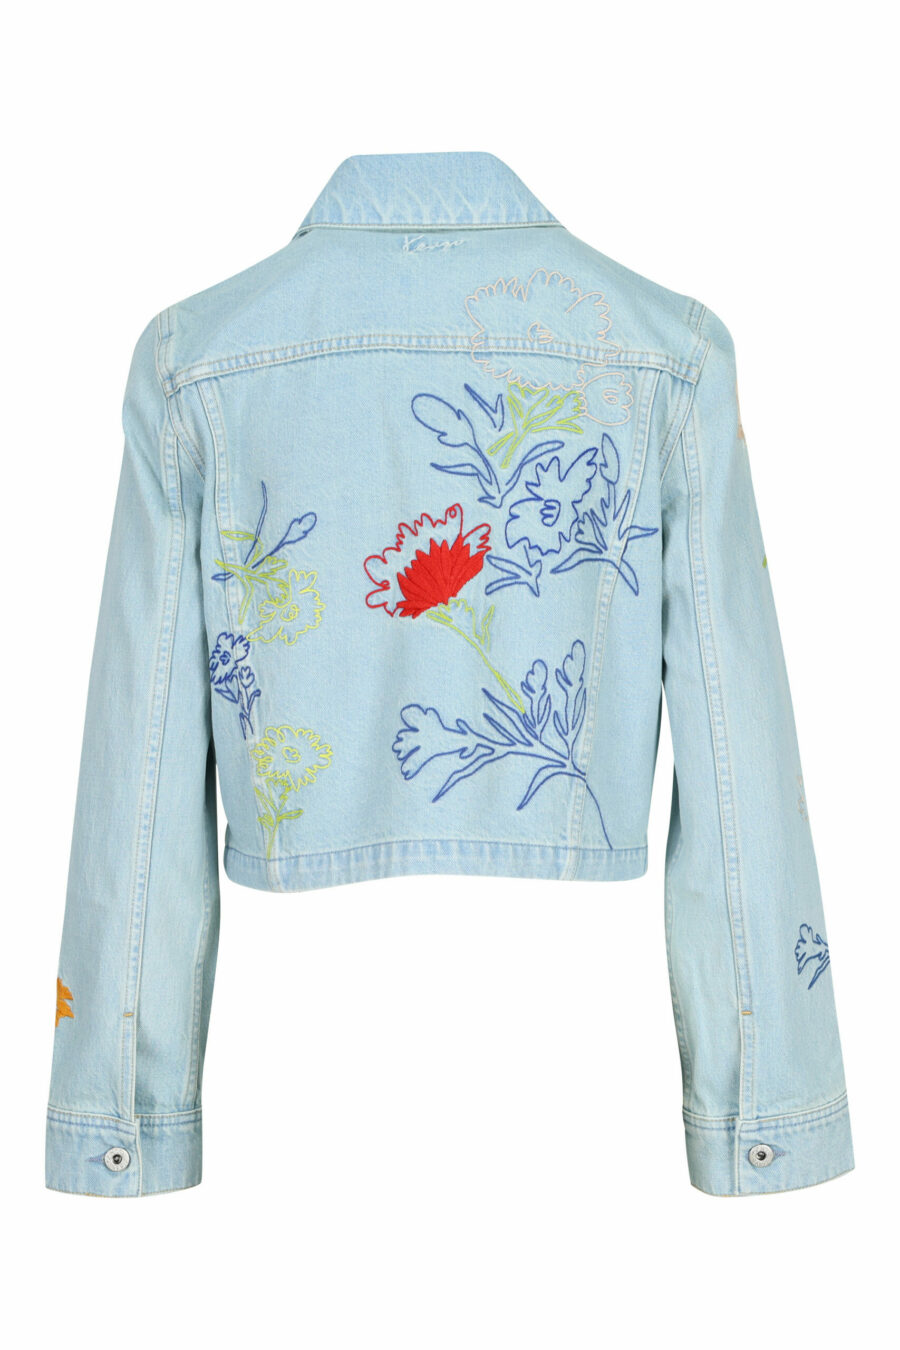 Blue denim jacket with logo "drawn flowers" - 3612230589117 1 scaled